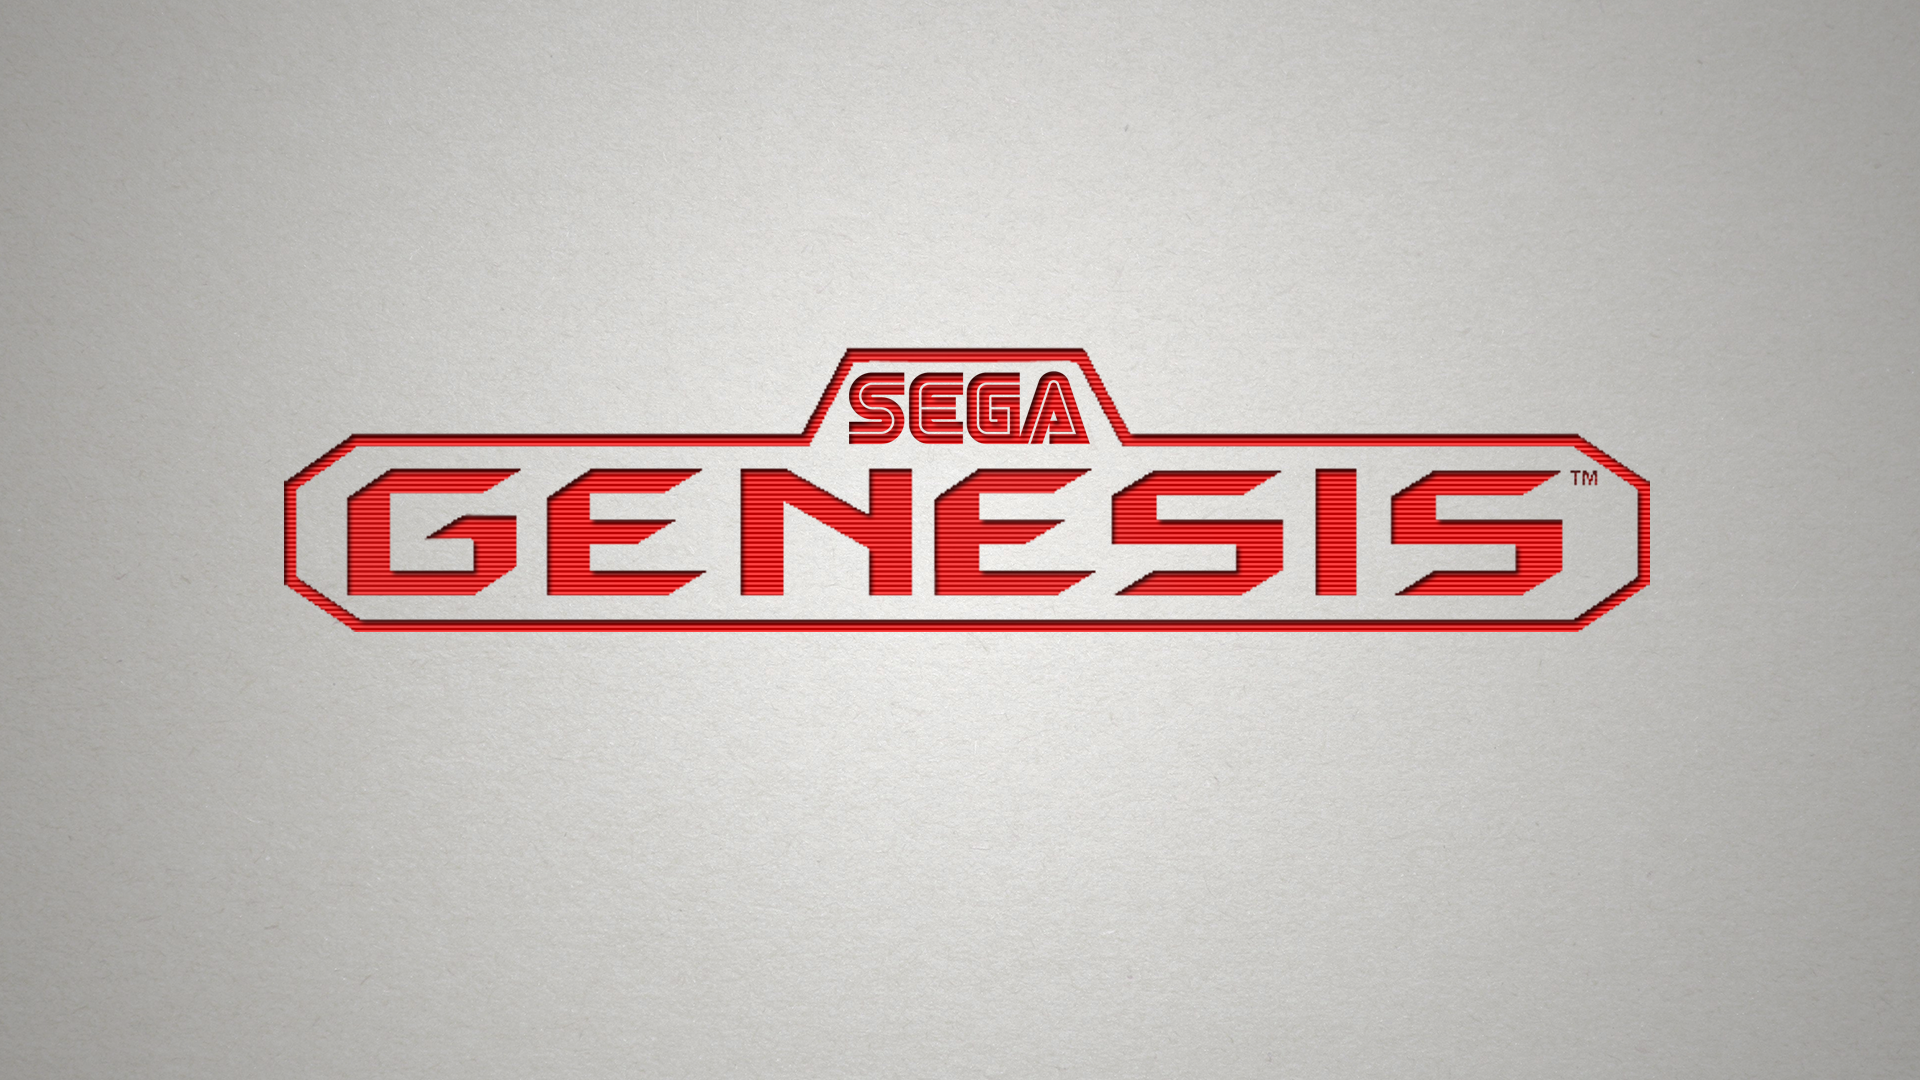 Sega Dreamcast Wallpaper Video Game Genesis